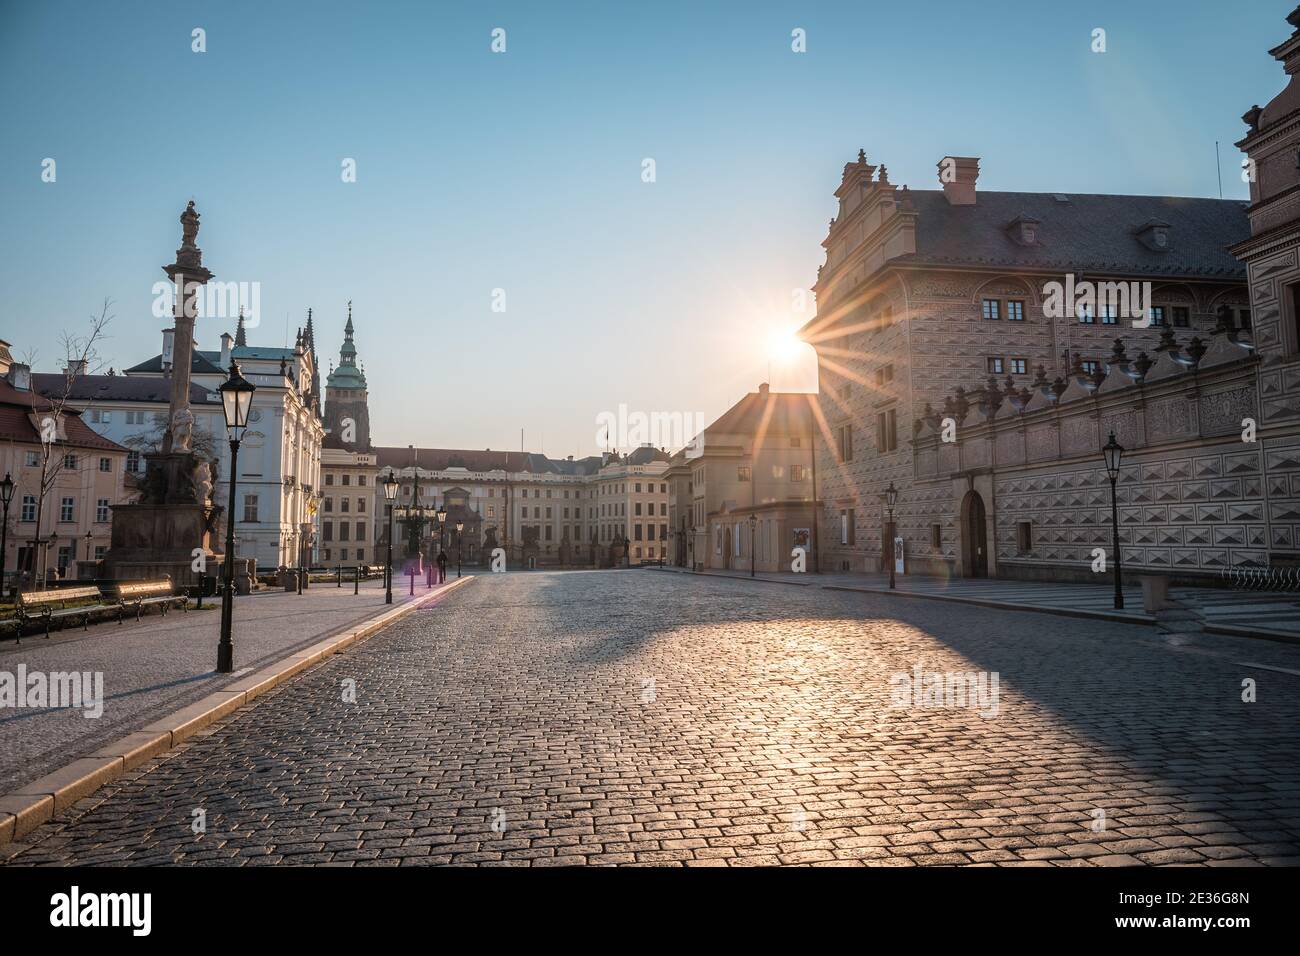 PRAG, TSCHECHISCHE REPUBLIK - APRIL, 2020: Hradcanske Platz, der Erzbischöfliche Palast und die Prager Burg. Kein Pleope, niemand Stockfoto